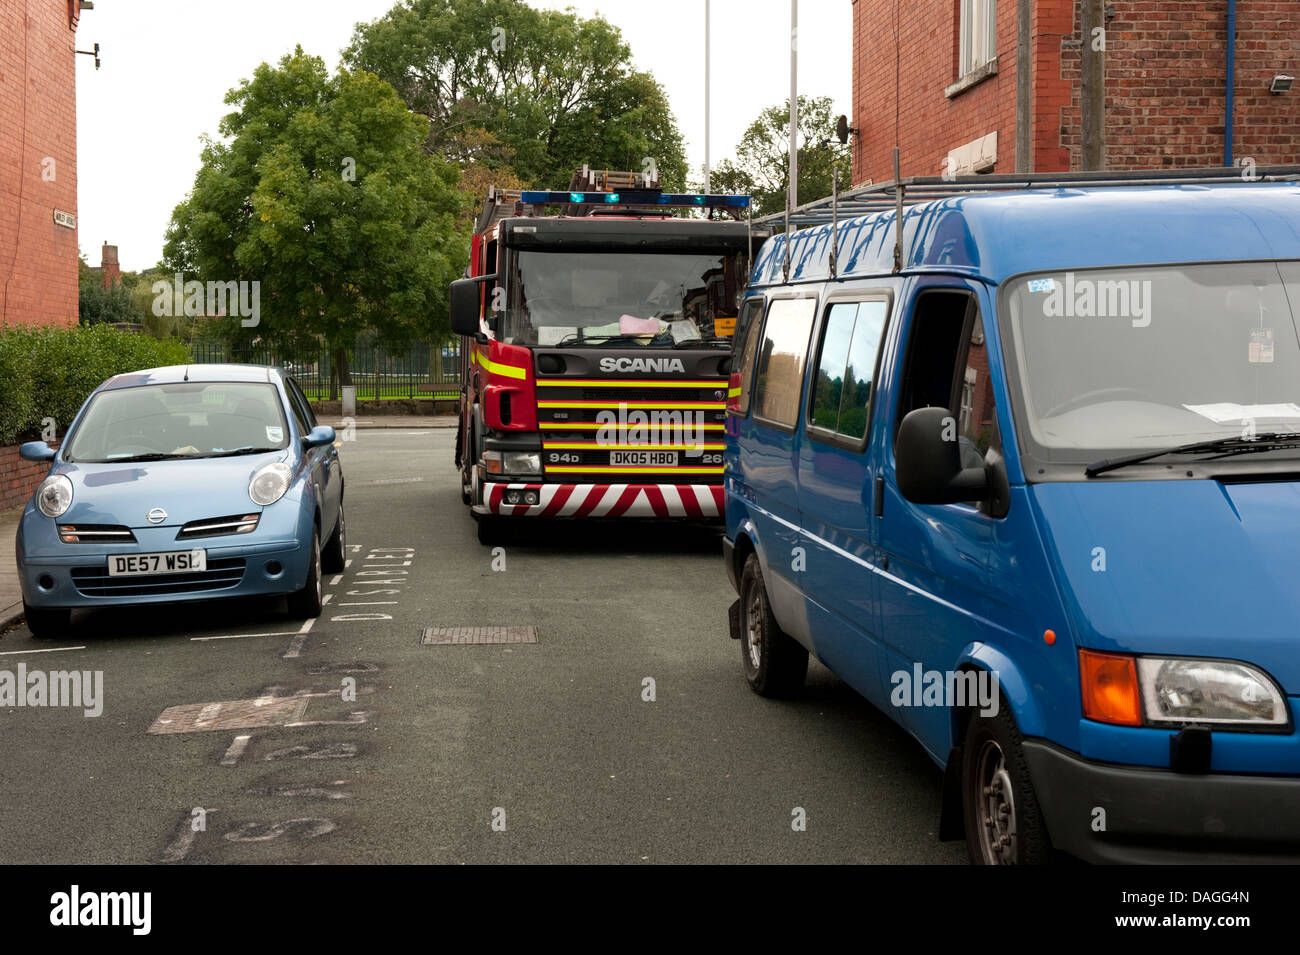 Feuerwehrauto bekommen nicht unten gesperrte Straße illegales Parken Risiken Leben. Stockfoto